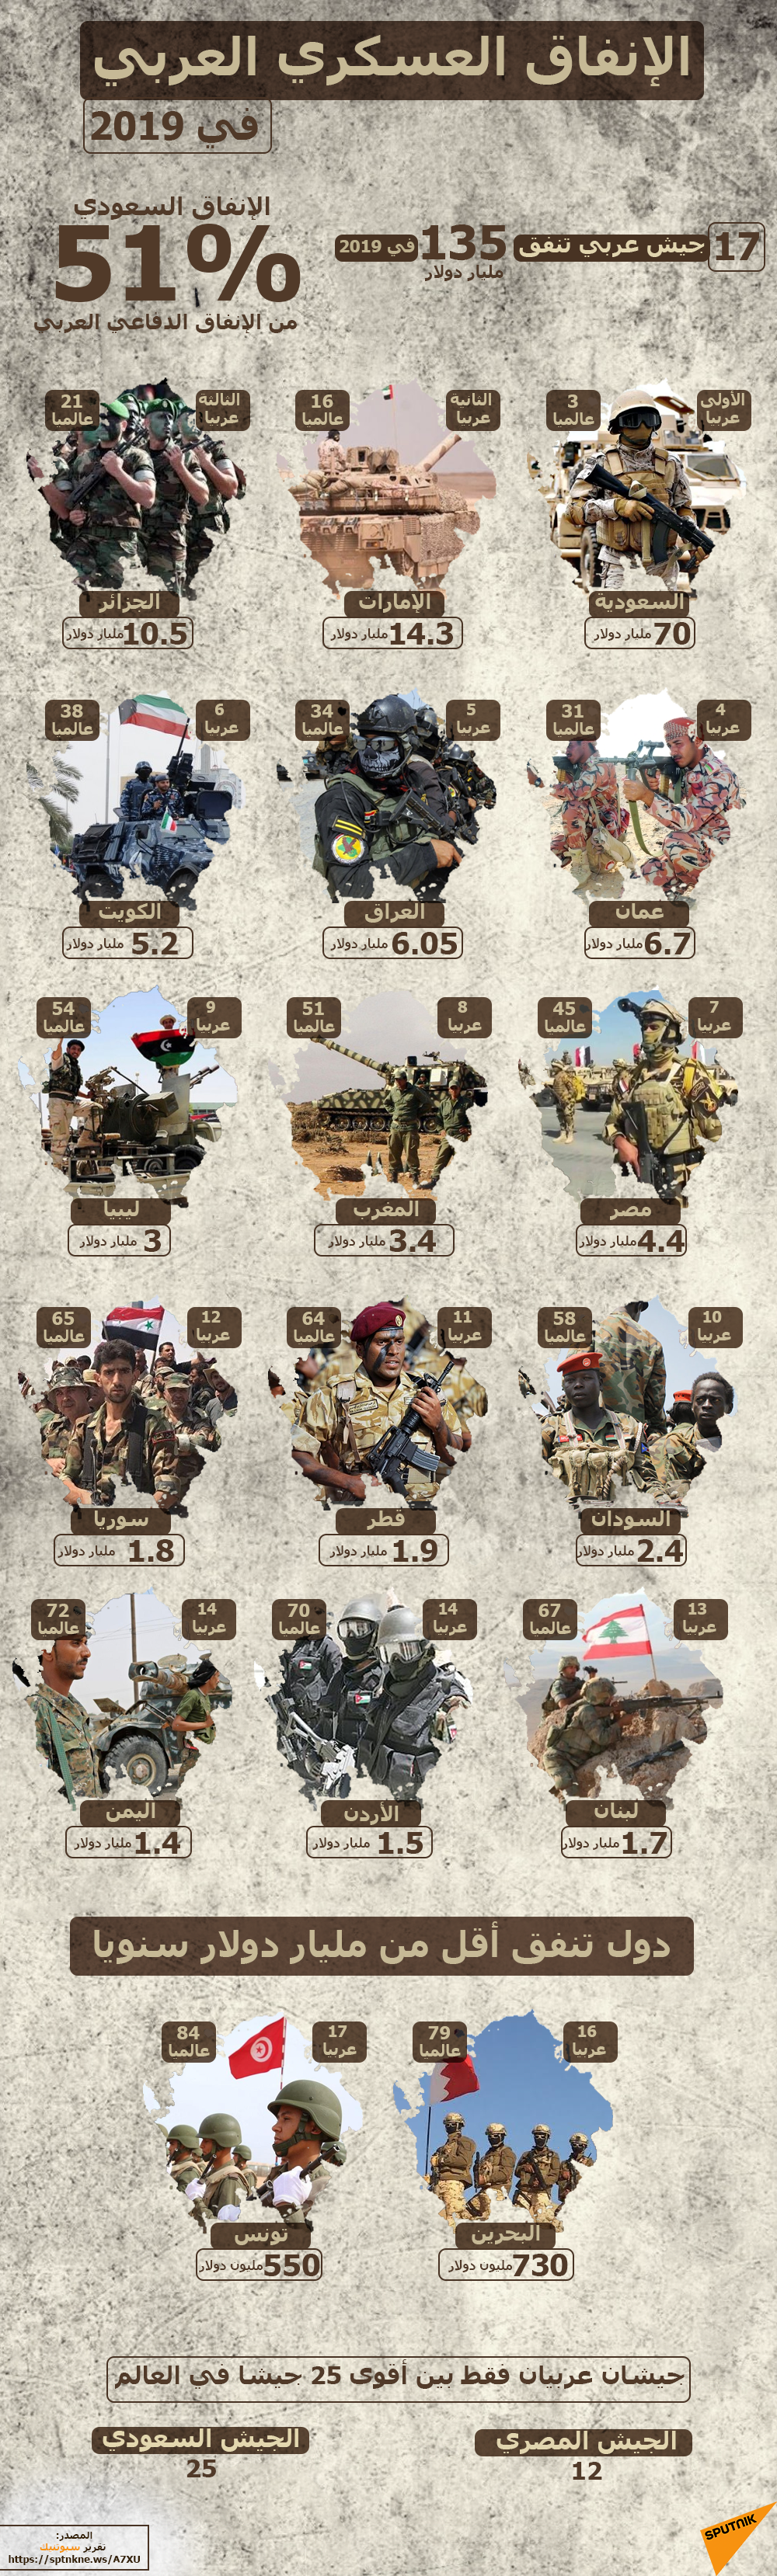 21 معلومة عن الإنفاق العسكري العربي في 2019 - سبوتنيك عربي